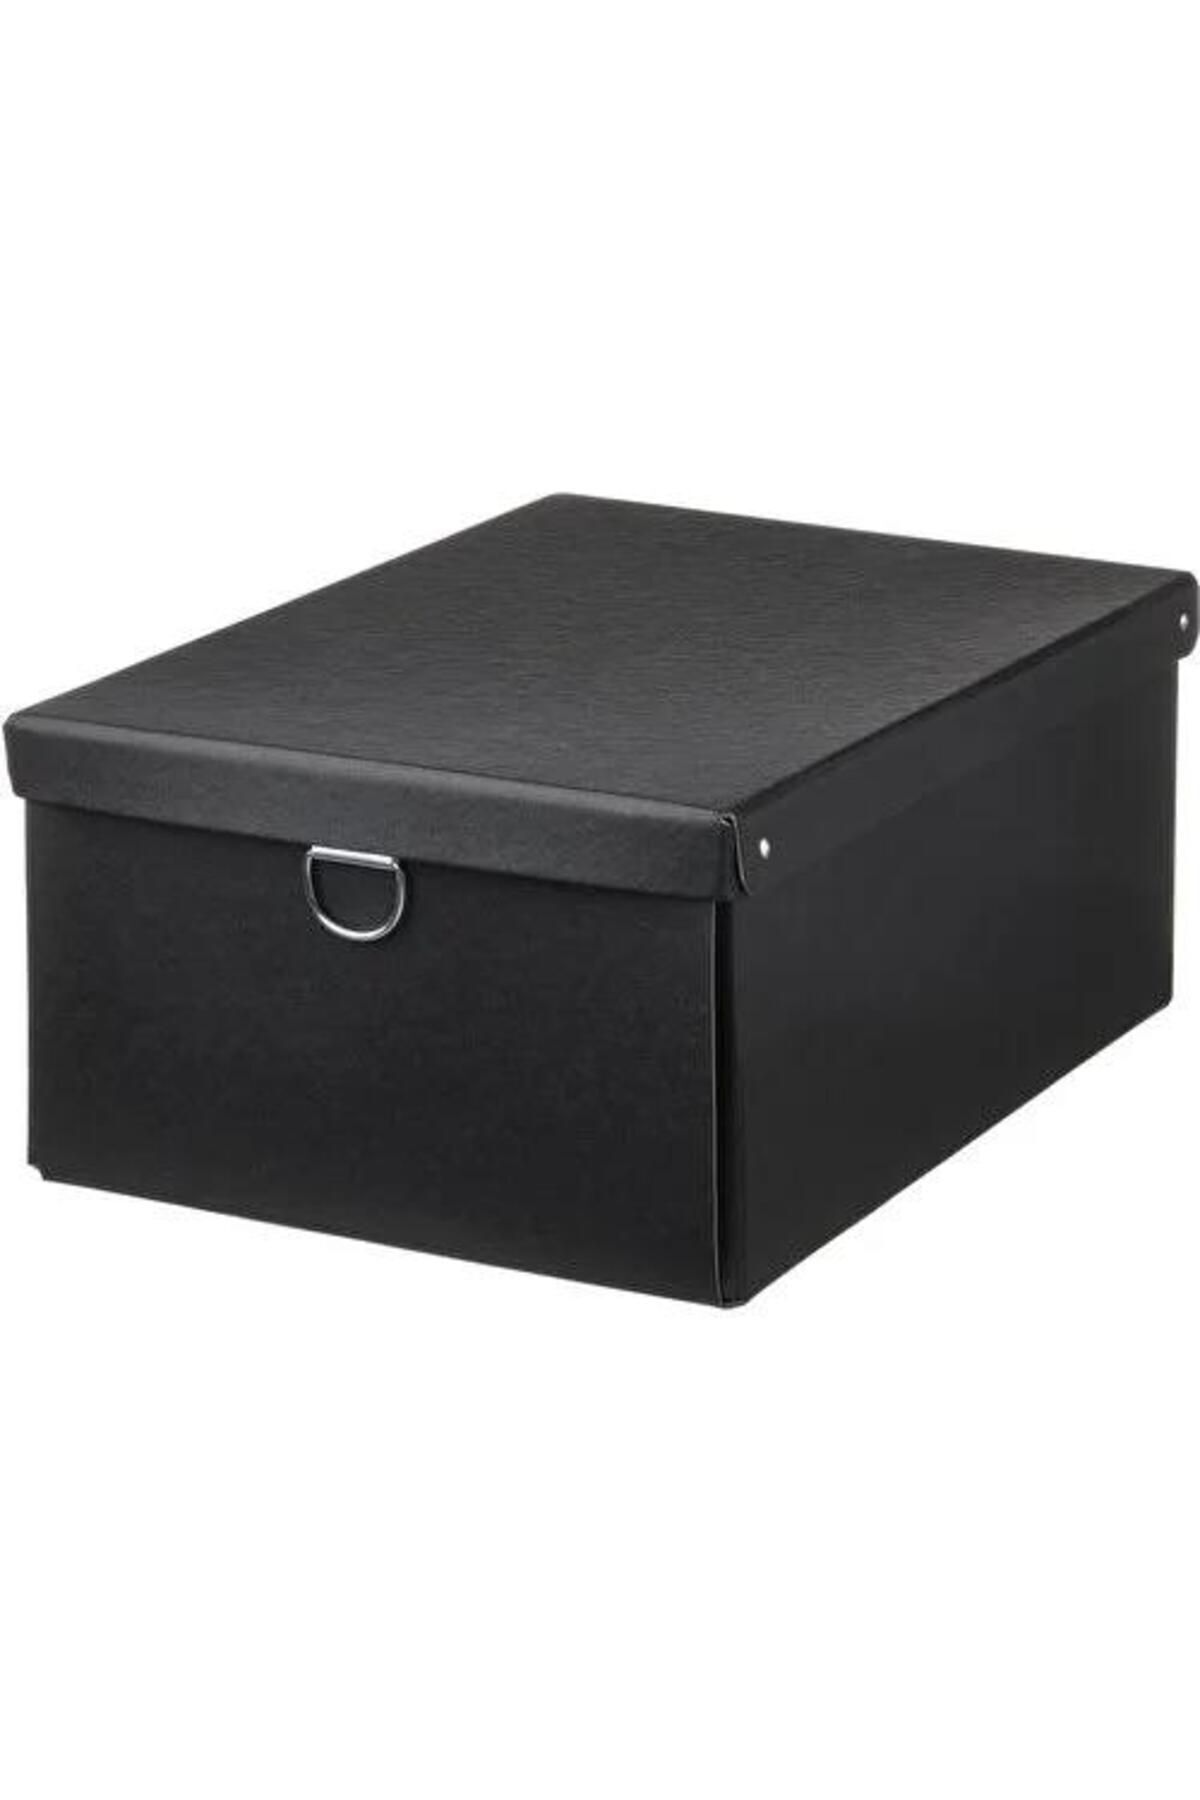 IKEA Kapaklı Saklama Kutusu, Dikdörtgen Siyah Renk MeridyenDukkan 25x35x15 cm Sert Karton-Düzenleyici Ev